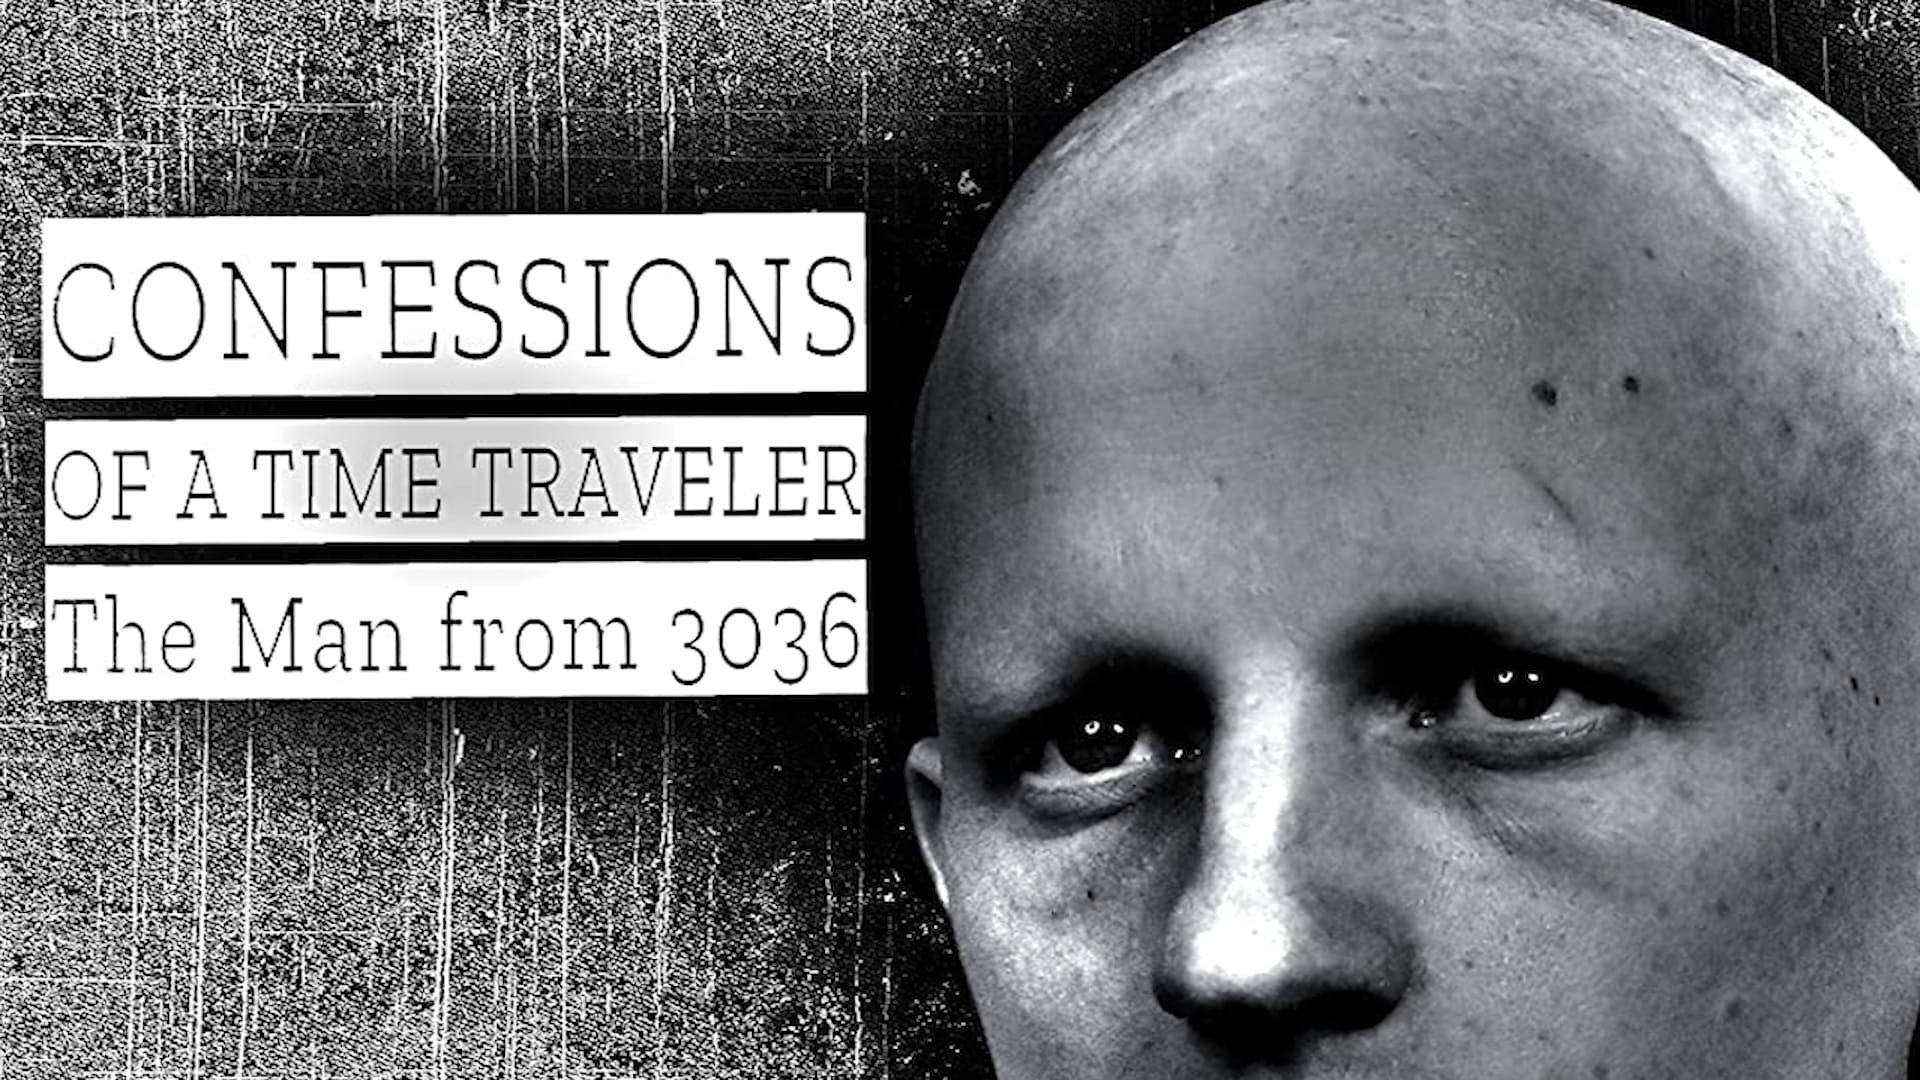 დროში მოგზაურის აღიარება - ადამიანი 3036 წლიდან / Confessions of a Time Traveler - The Man from 3036